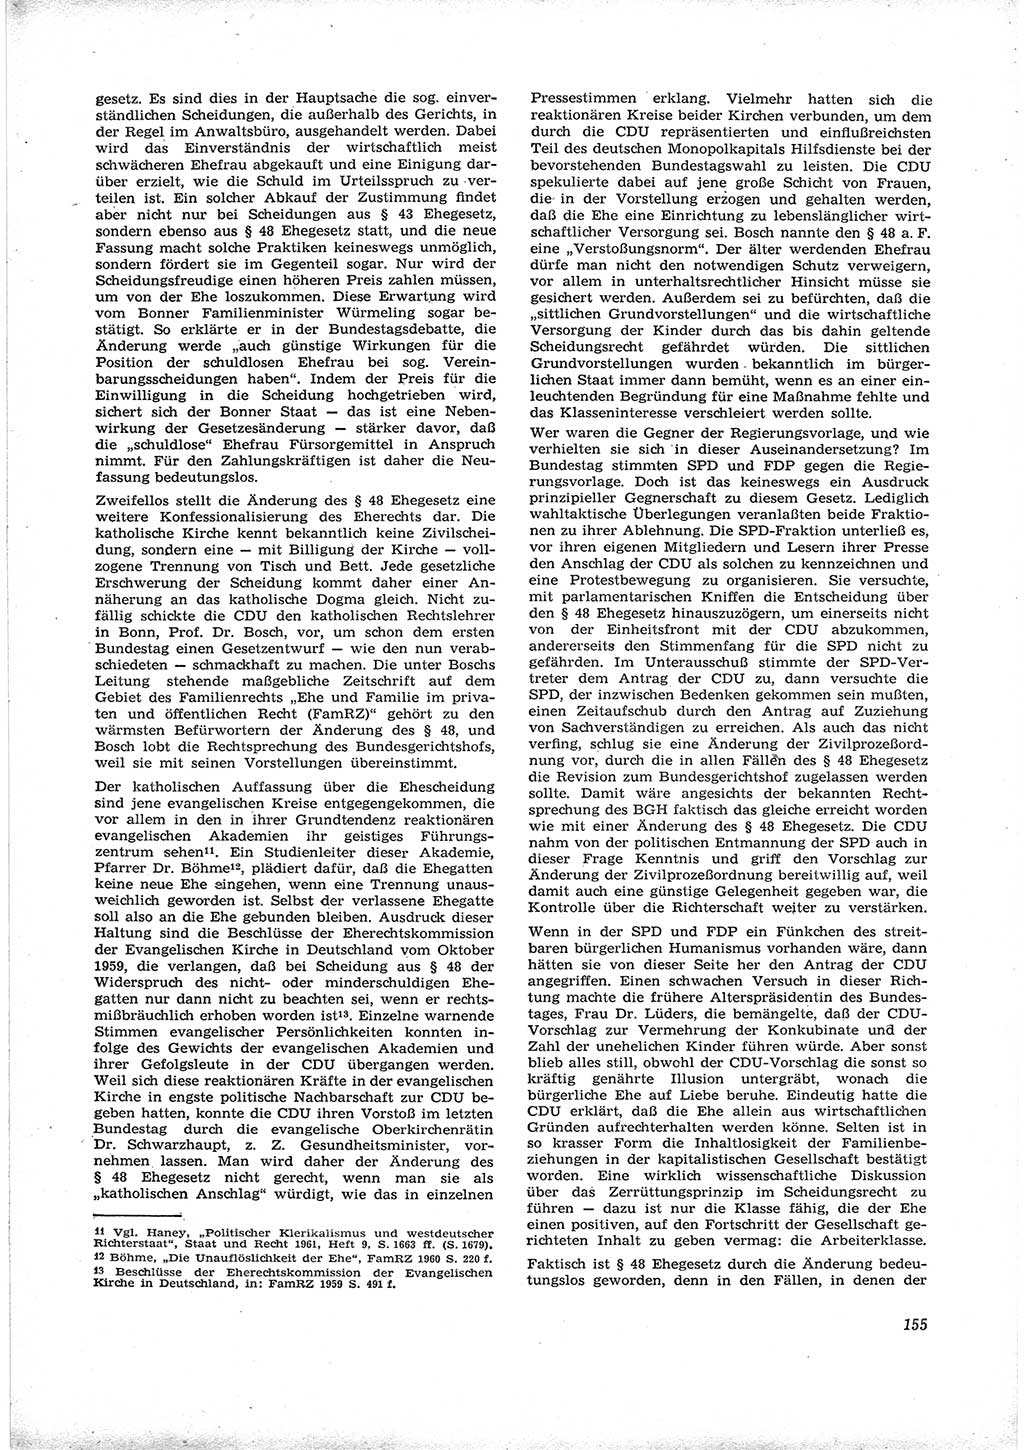 Neue Justiz (NJ), Zeitschrift für Recht und Rechtswissenschaft [Deutsche Demokratische Republik (DDR)], 16. Jahrgang 1962, Seite 155 (NJ DDR 1962, S. 155)